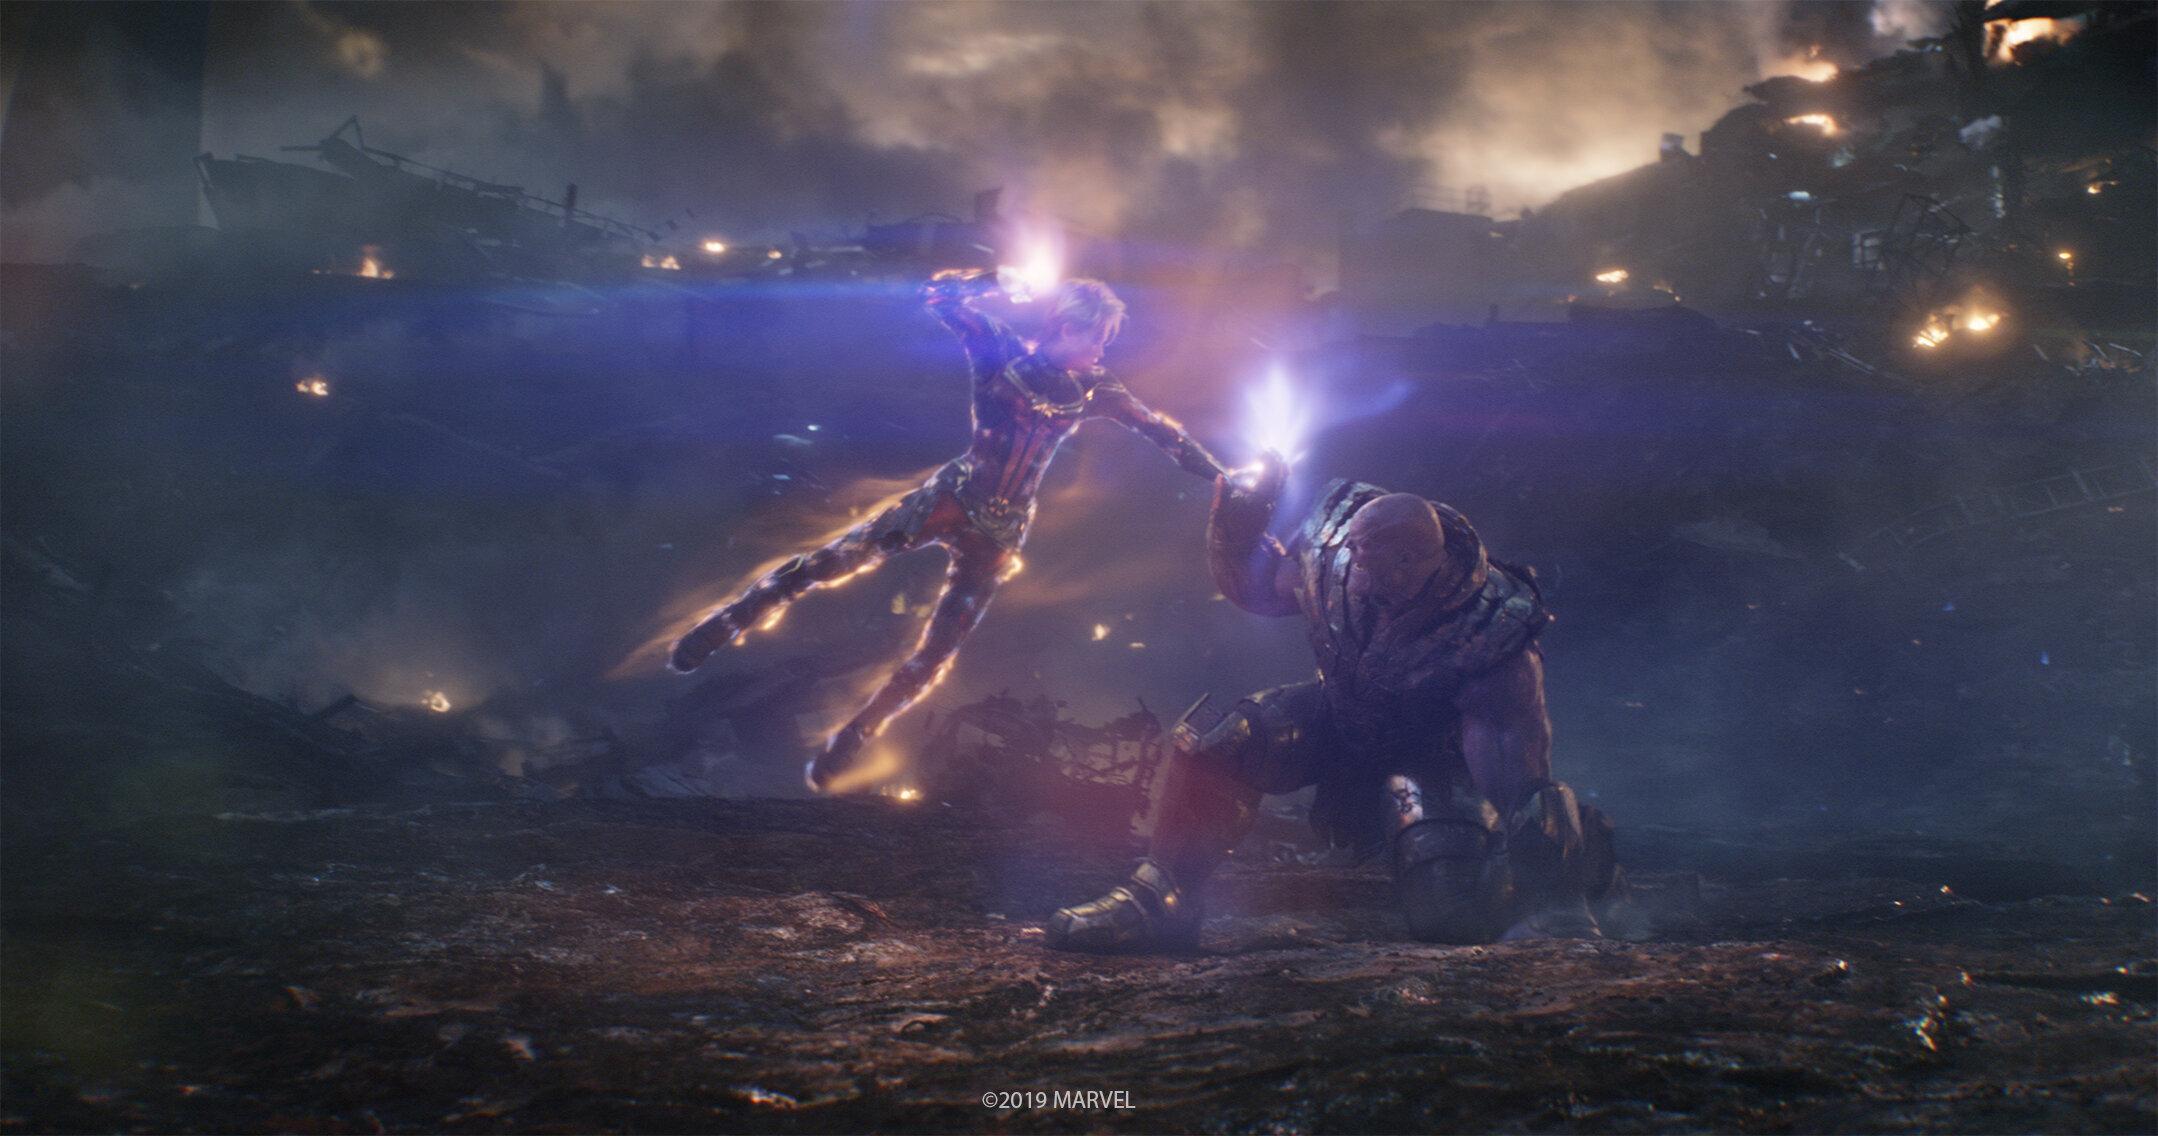 Captain Marvel vs Thanos Avengers: Endgame Image Released. Cosmic